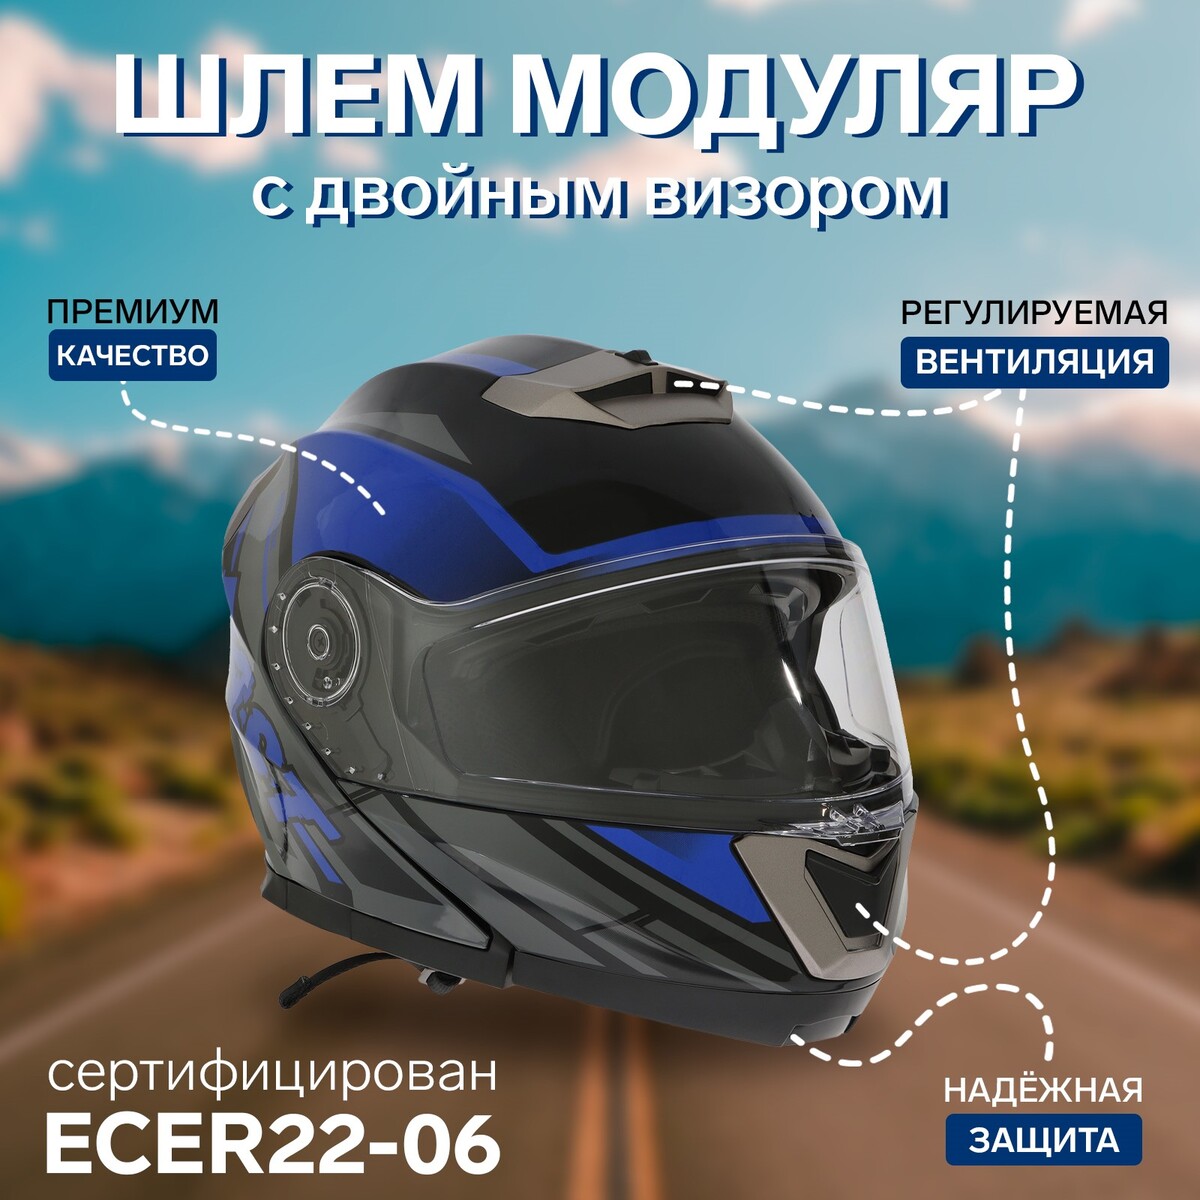 Шлем модуляр с двумя визорами, размер l (59-60), модель - bld-160e, черно-синий